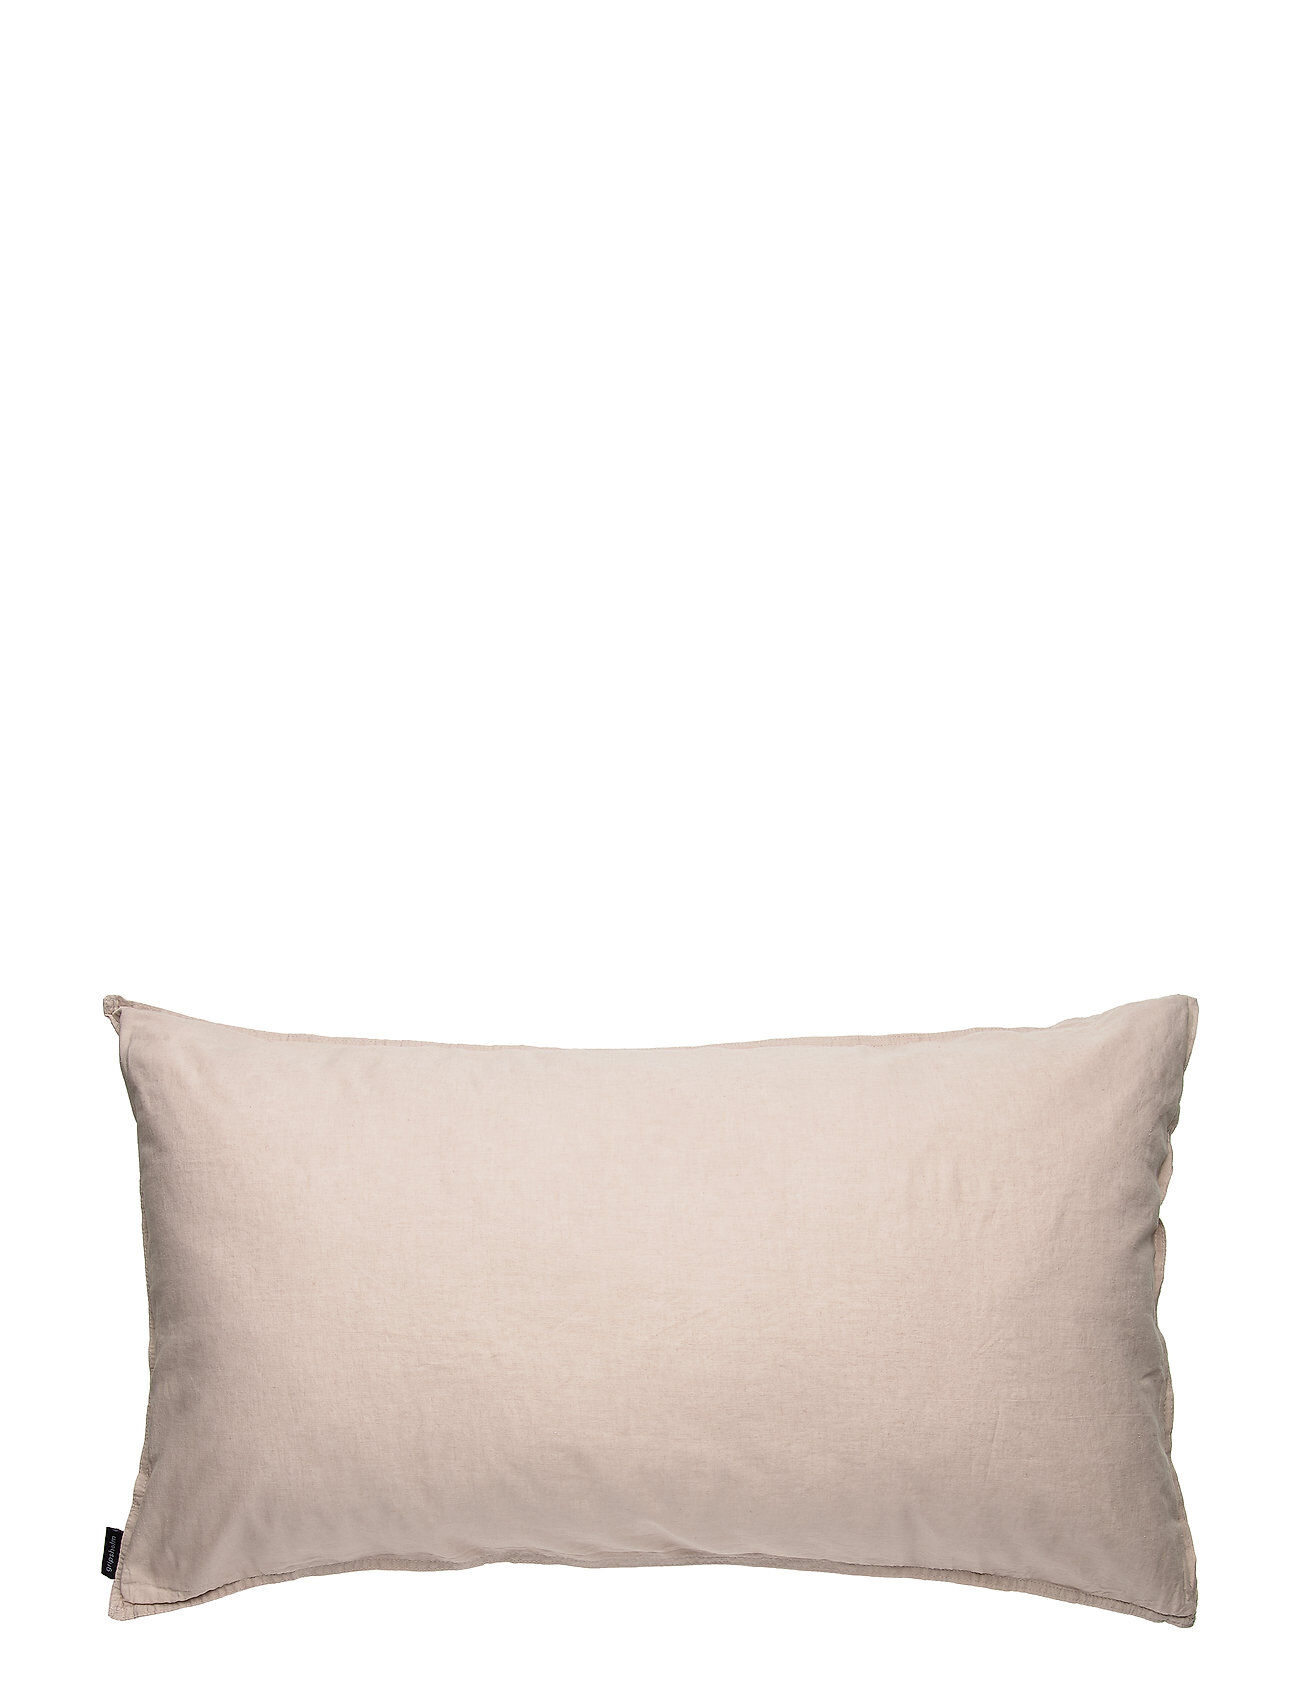 Gripsholm Pillowcase Linen Blend Home Textiles Bedtextiles Pillow Cases Rosa Gripsholm